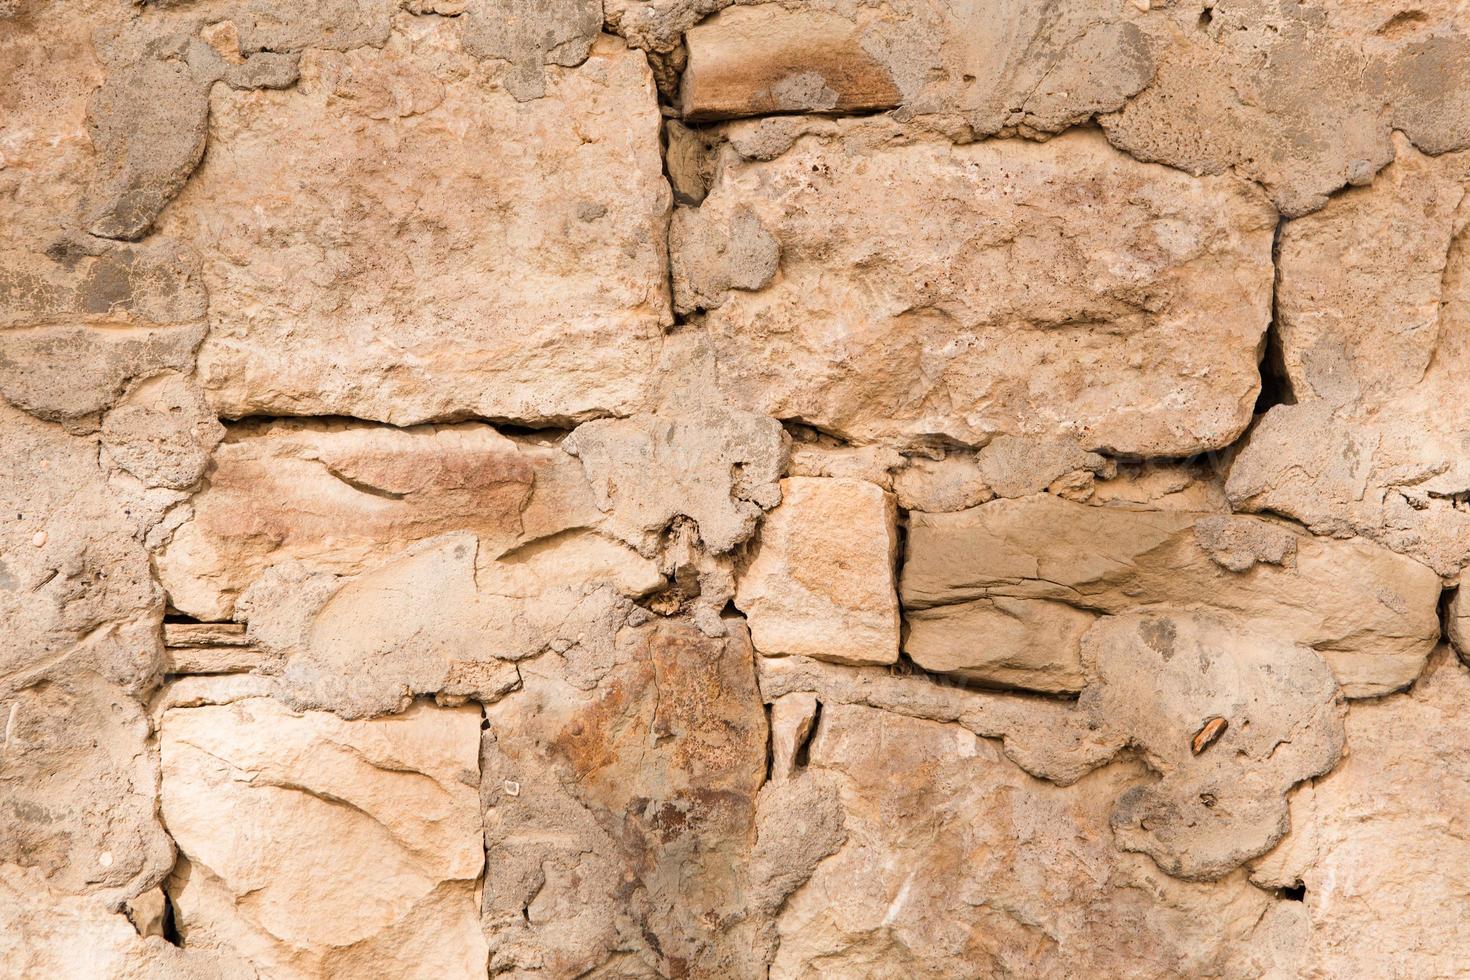 murs en maçonnerie de couleur sable naturel. gros plan de texture de pierre, fond de construction et d'exploitation minière. photo